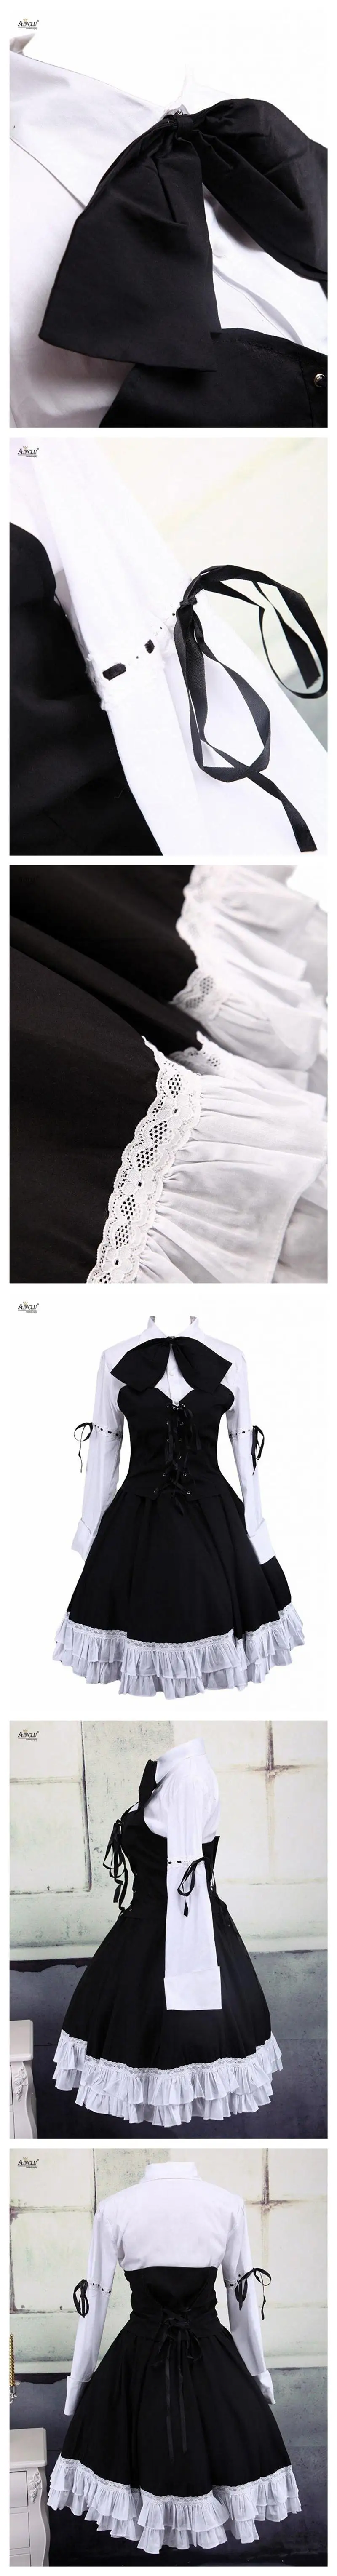 Платье в стиле «Лолита» платье костюмы белая хлопковая одежда с длинным рукавом Лолита Блузка и черная юбка лолита панк милые девушки